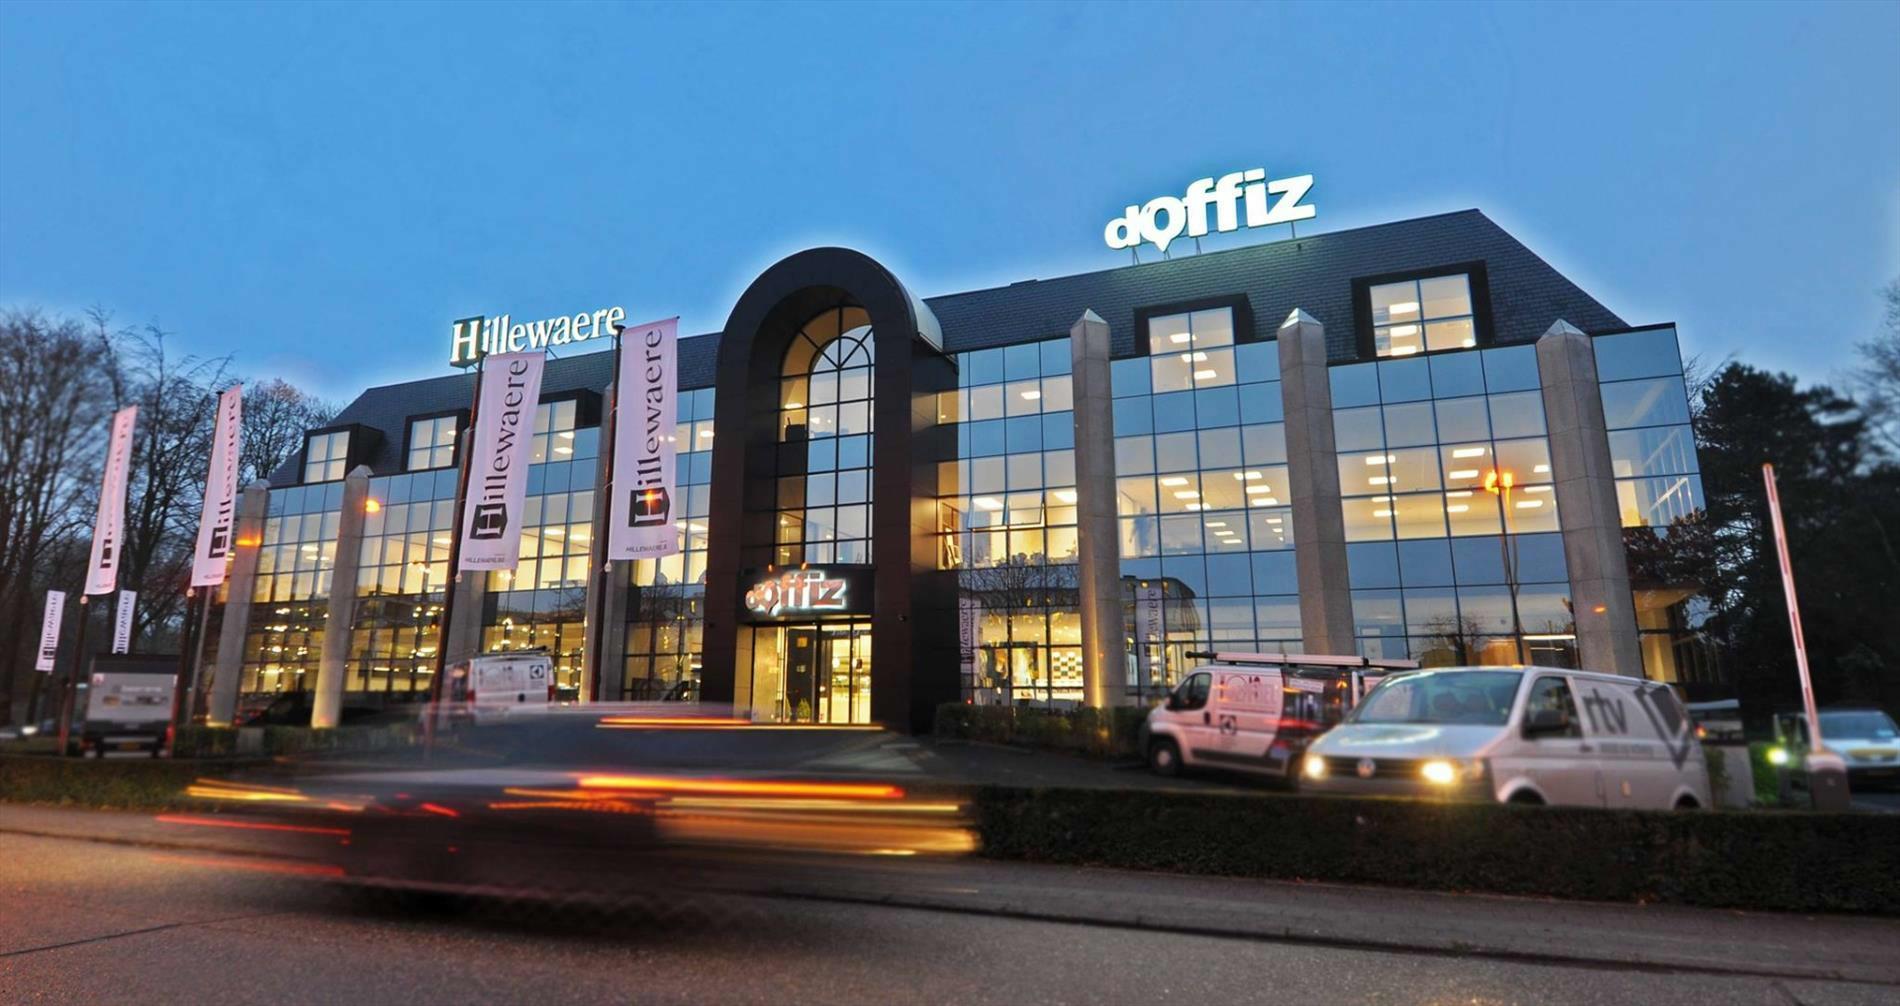 Business Center D'OFFIZ